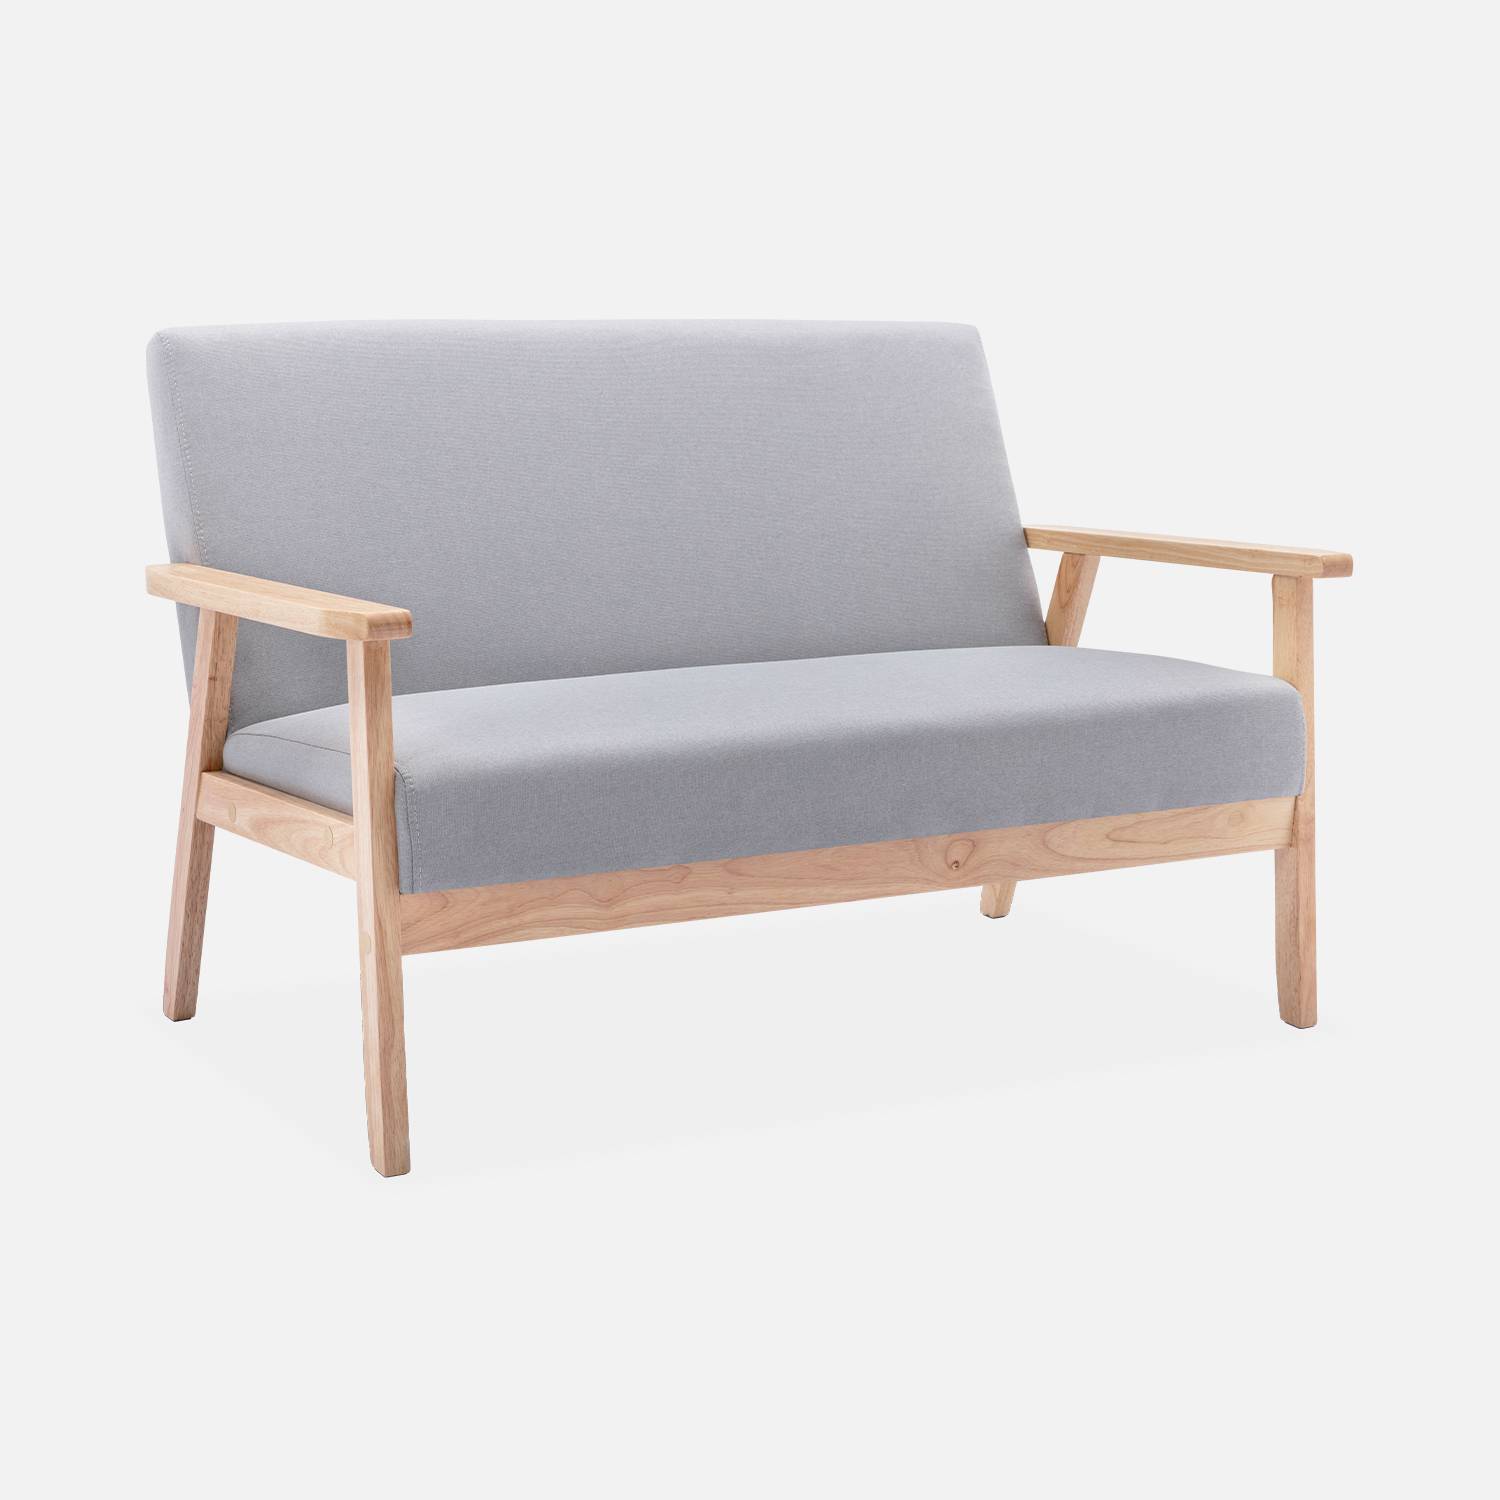 Panca per divano in legno e tessuto grigio chiaro, Isak, L 114 x P 69,5 x H 73cm Photo4